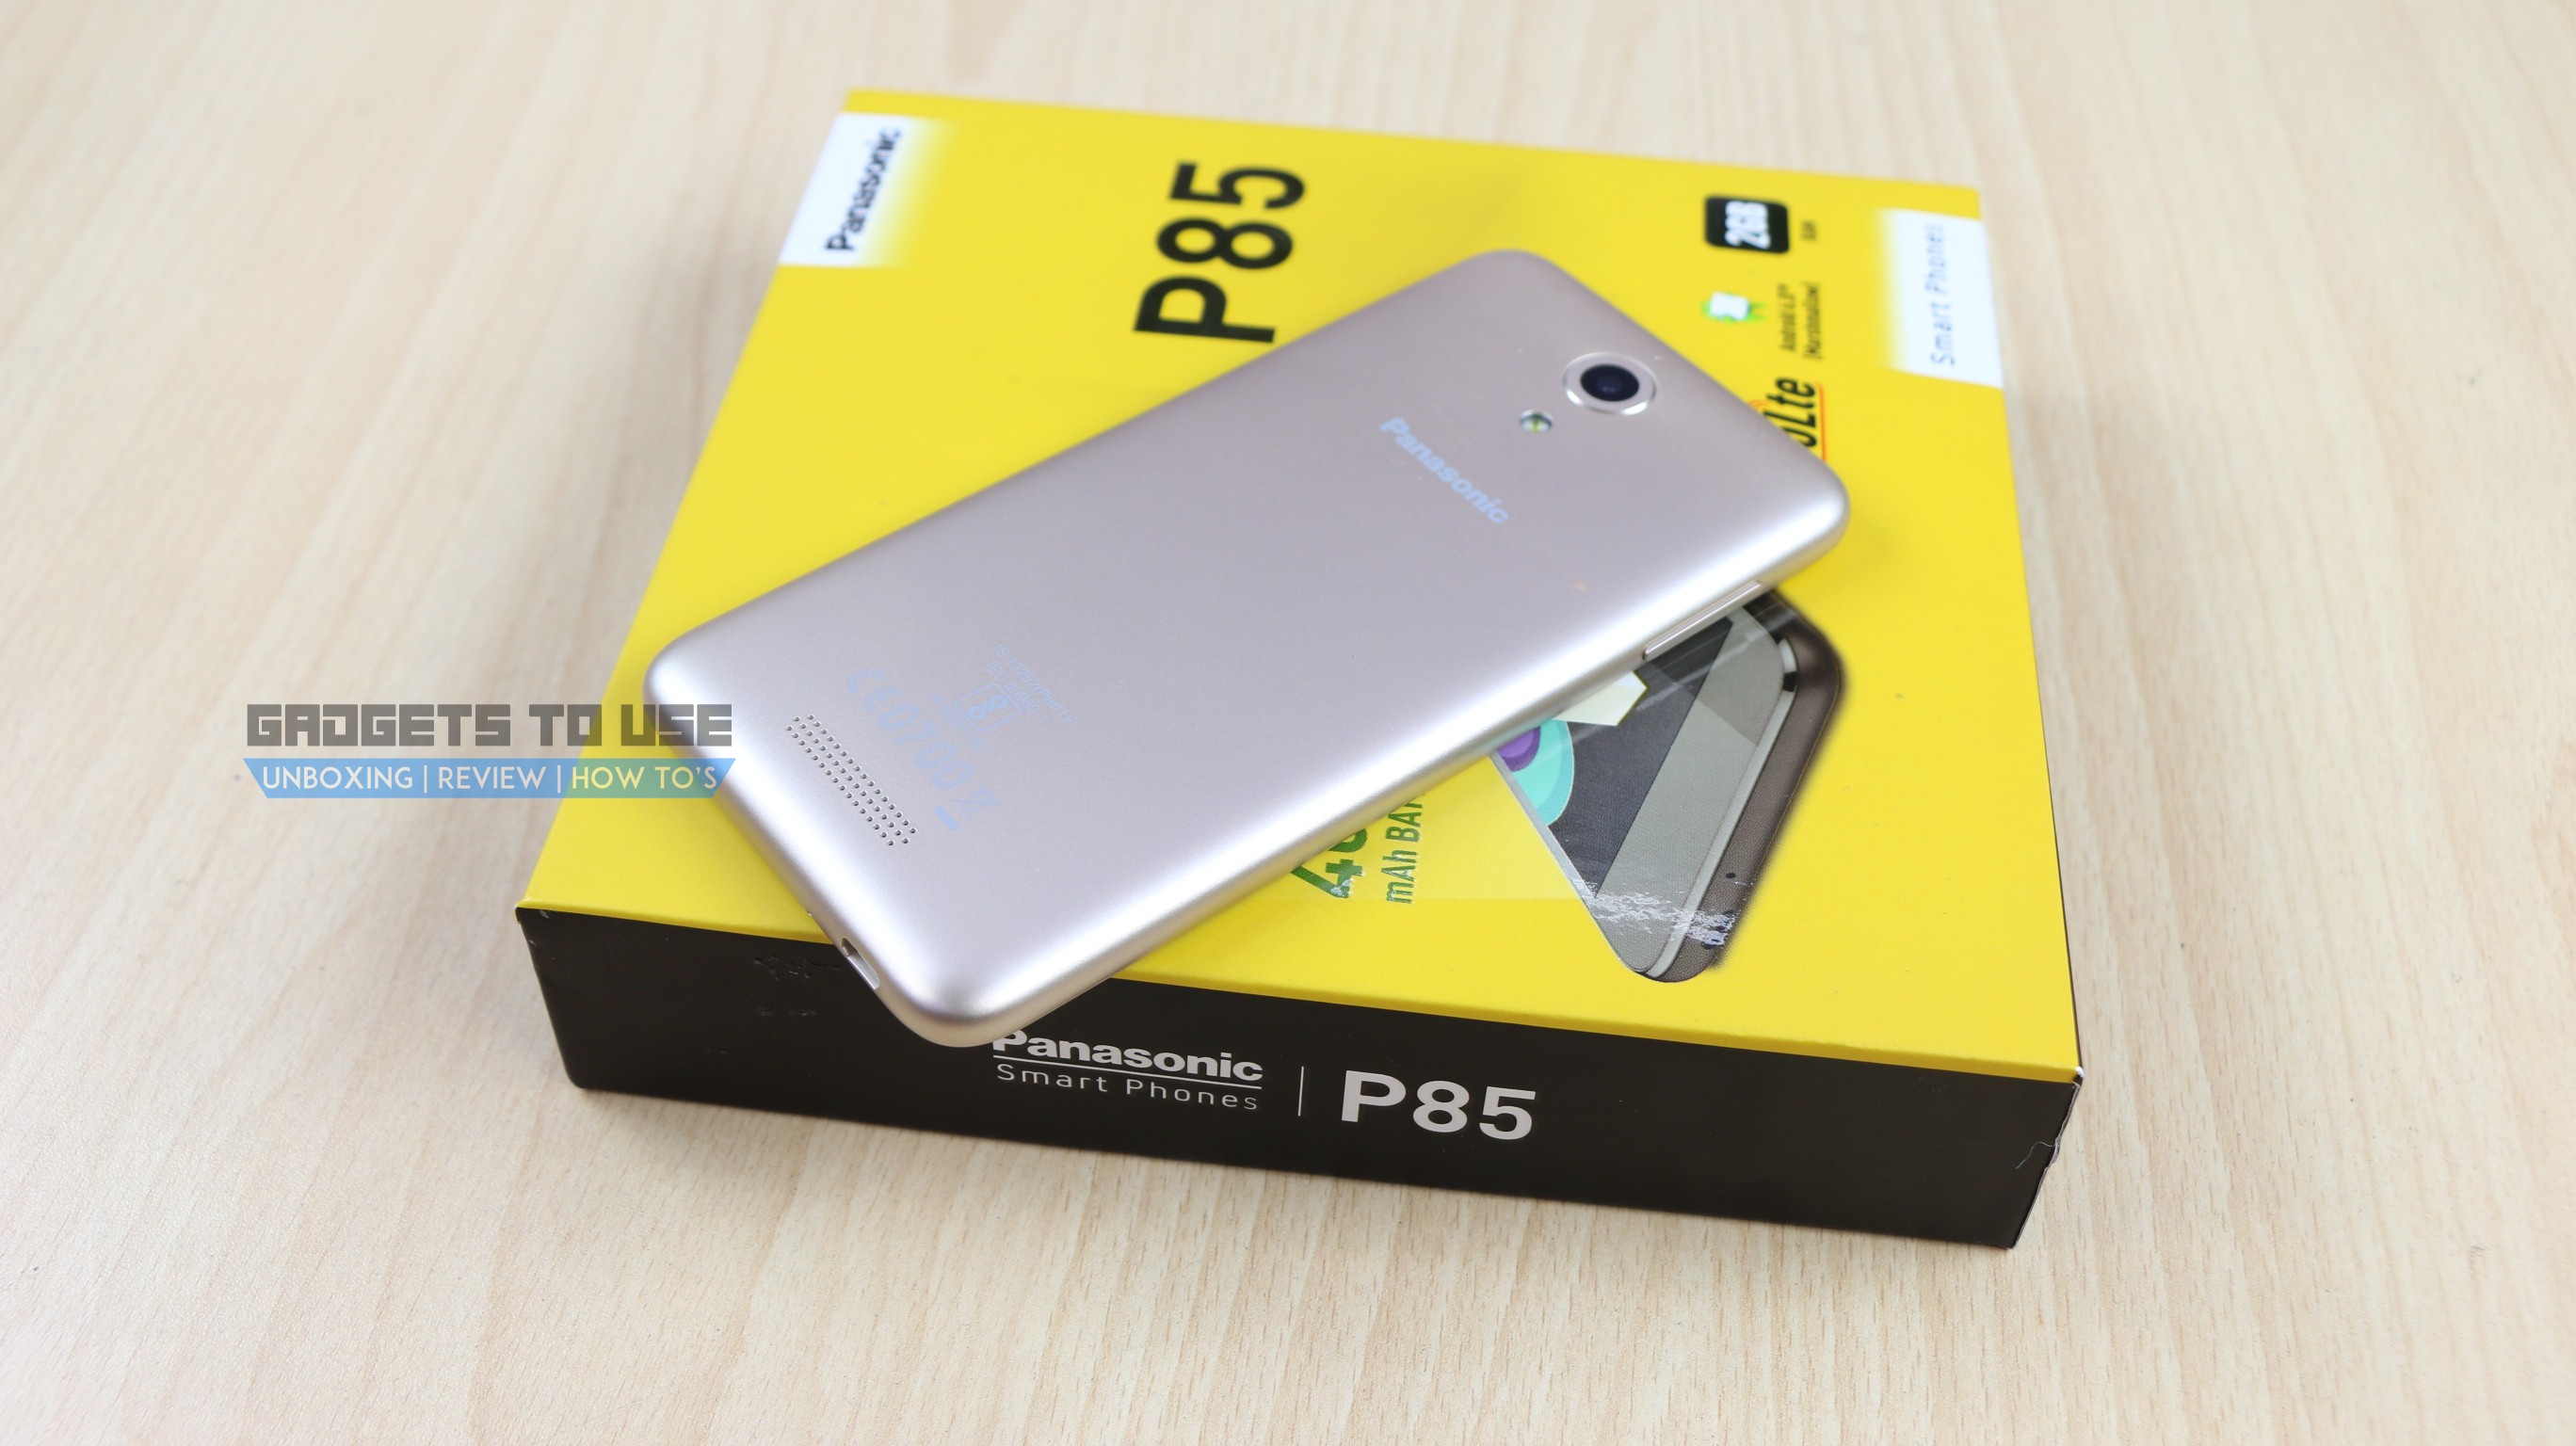 Unboxing, revisione rapida, panoramica della fotocamera e benchmark di Panasonic P85